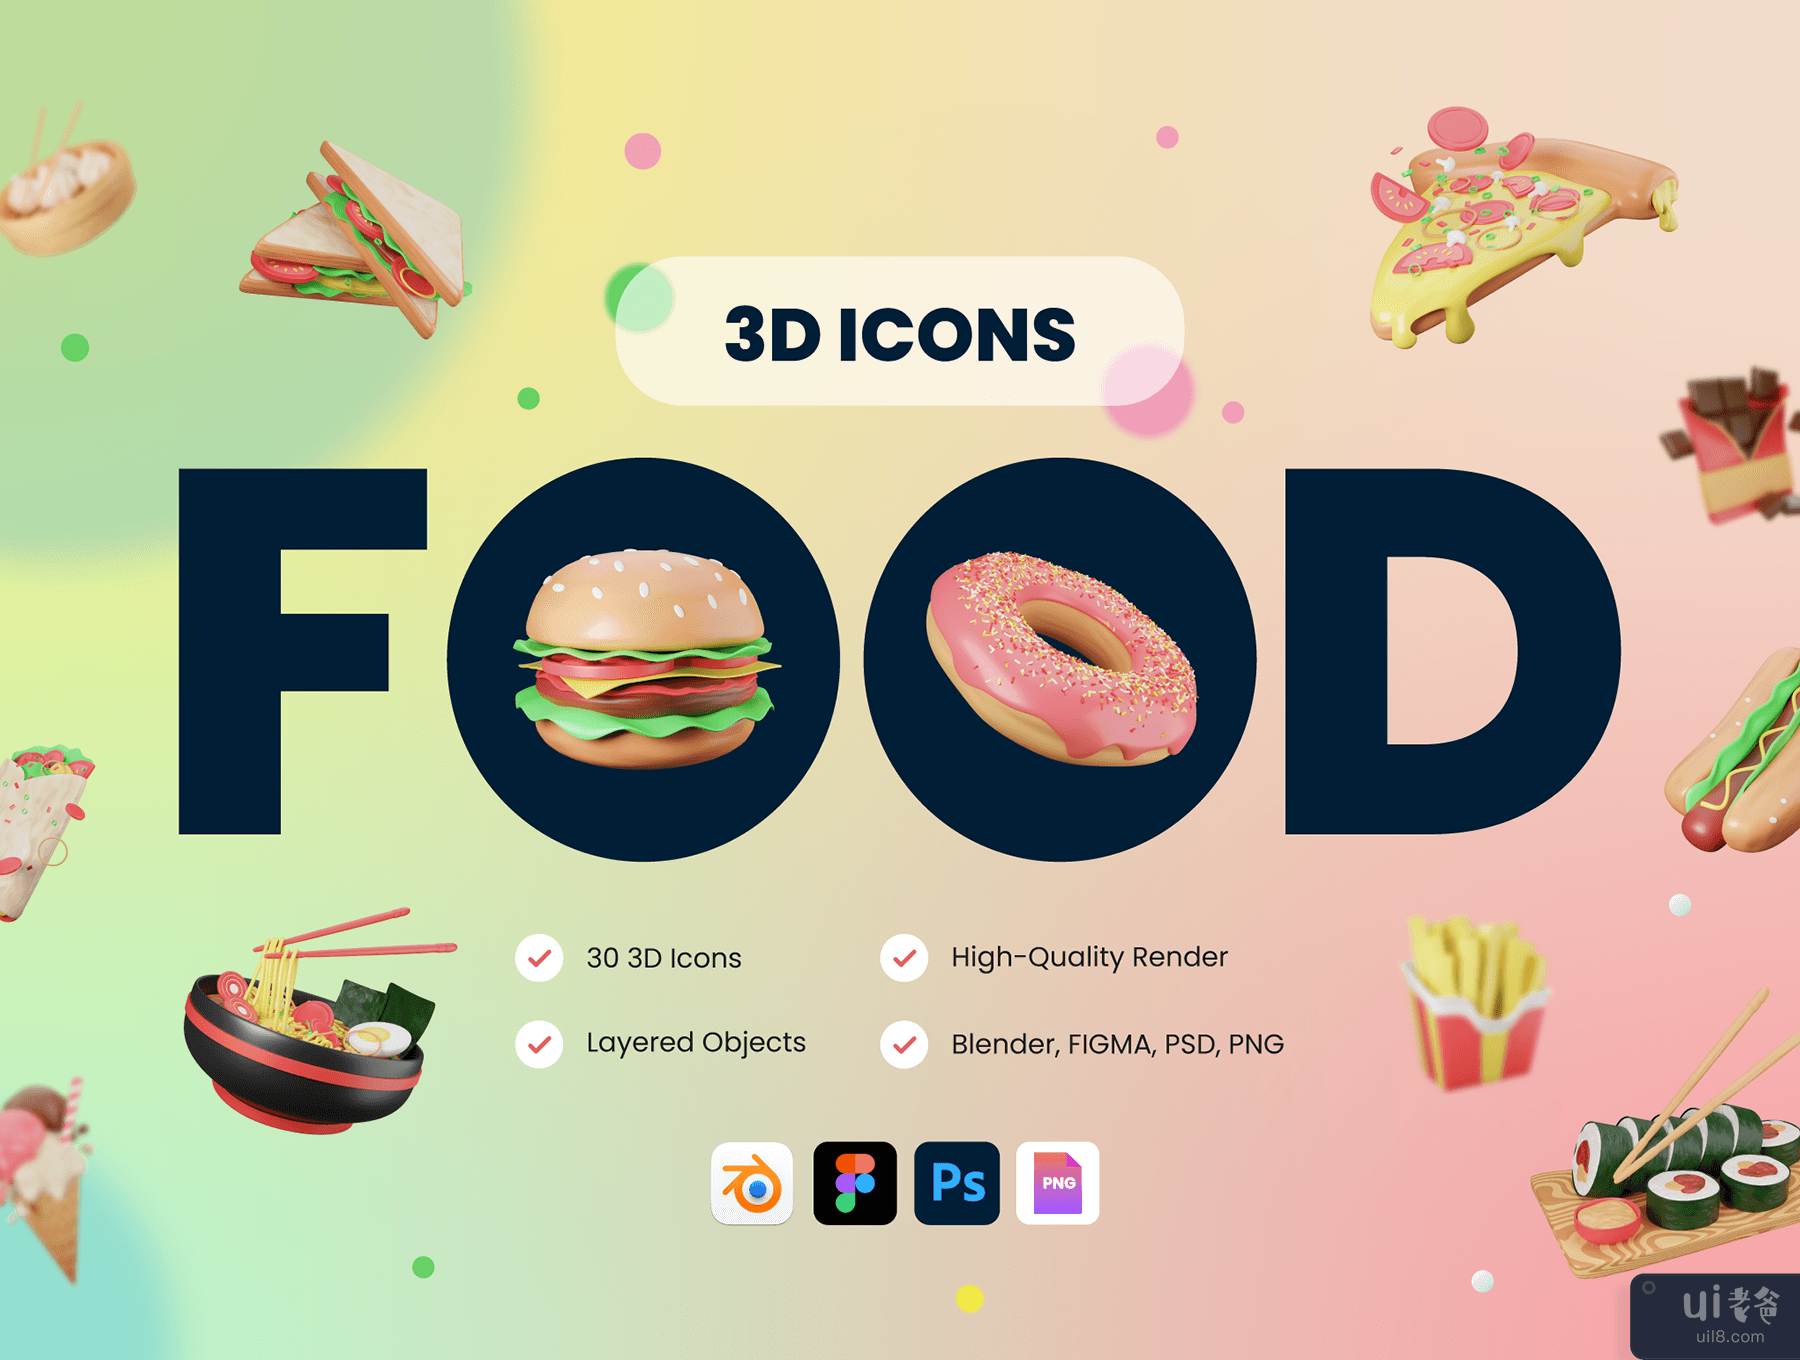 30 个 3D 食品和餐饮图标插图 (30 3D Food & Meals Icons Illustration)插图7